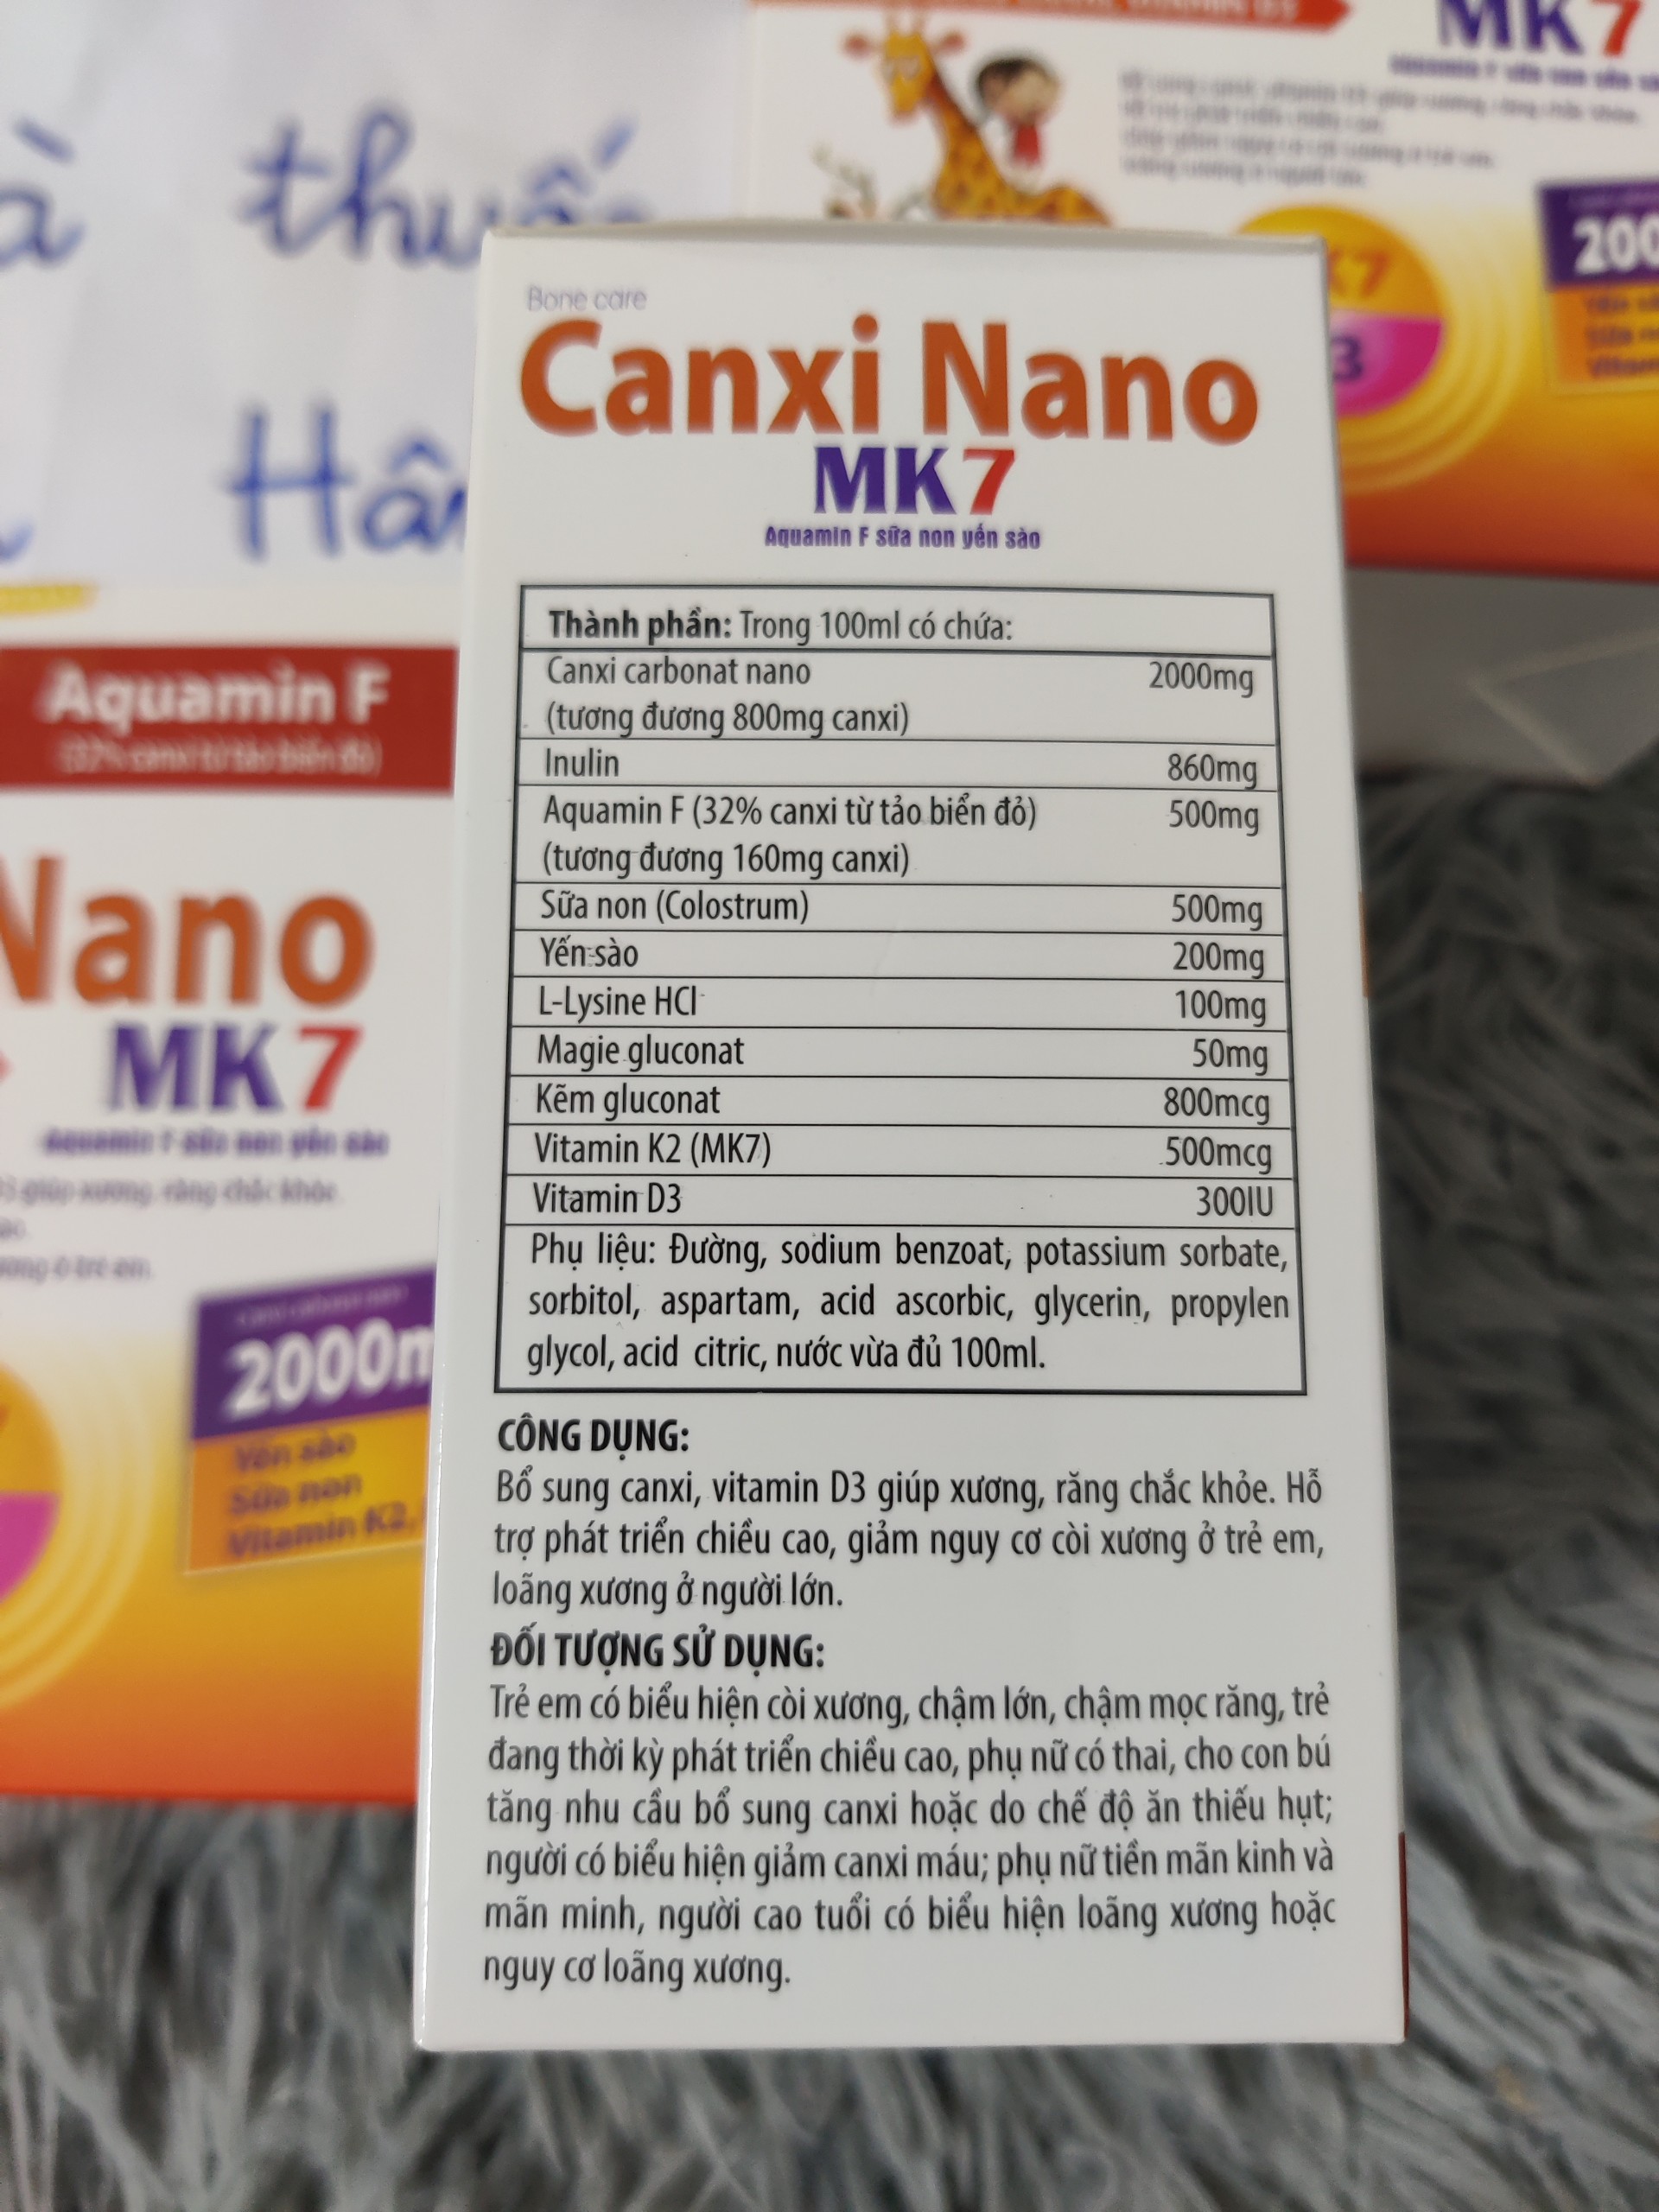 Canxi Nano MK7